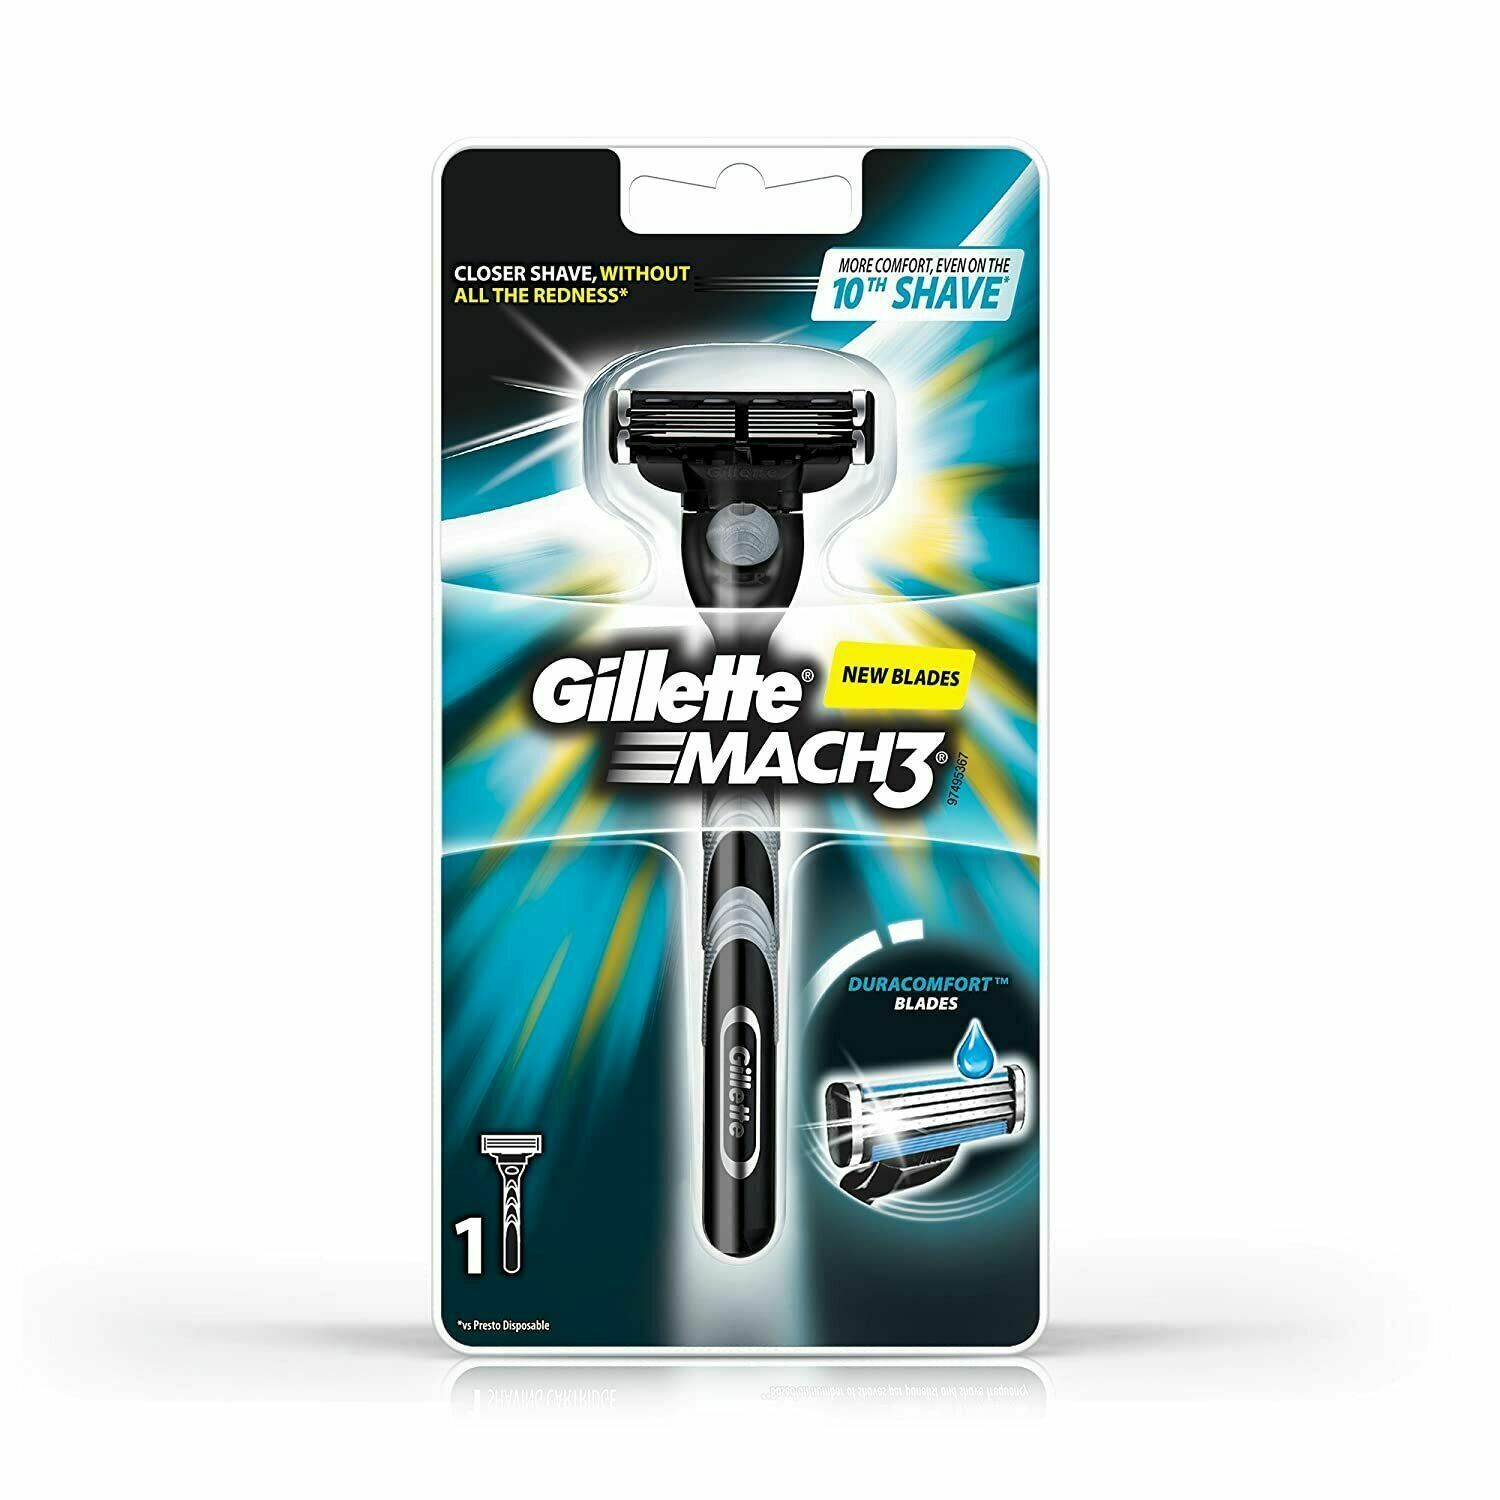 Gillette Mach 3 Manual Shaving Razor for Men (Pack of 1)